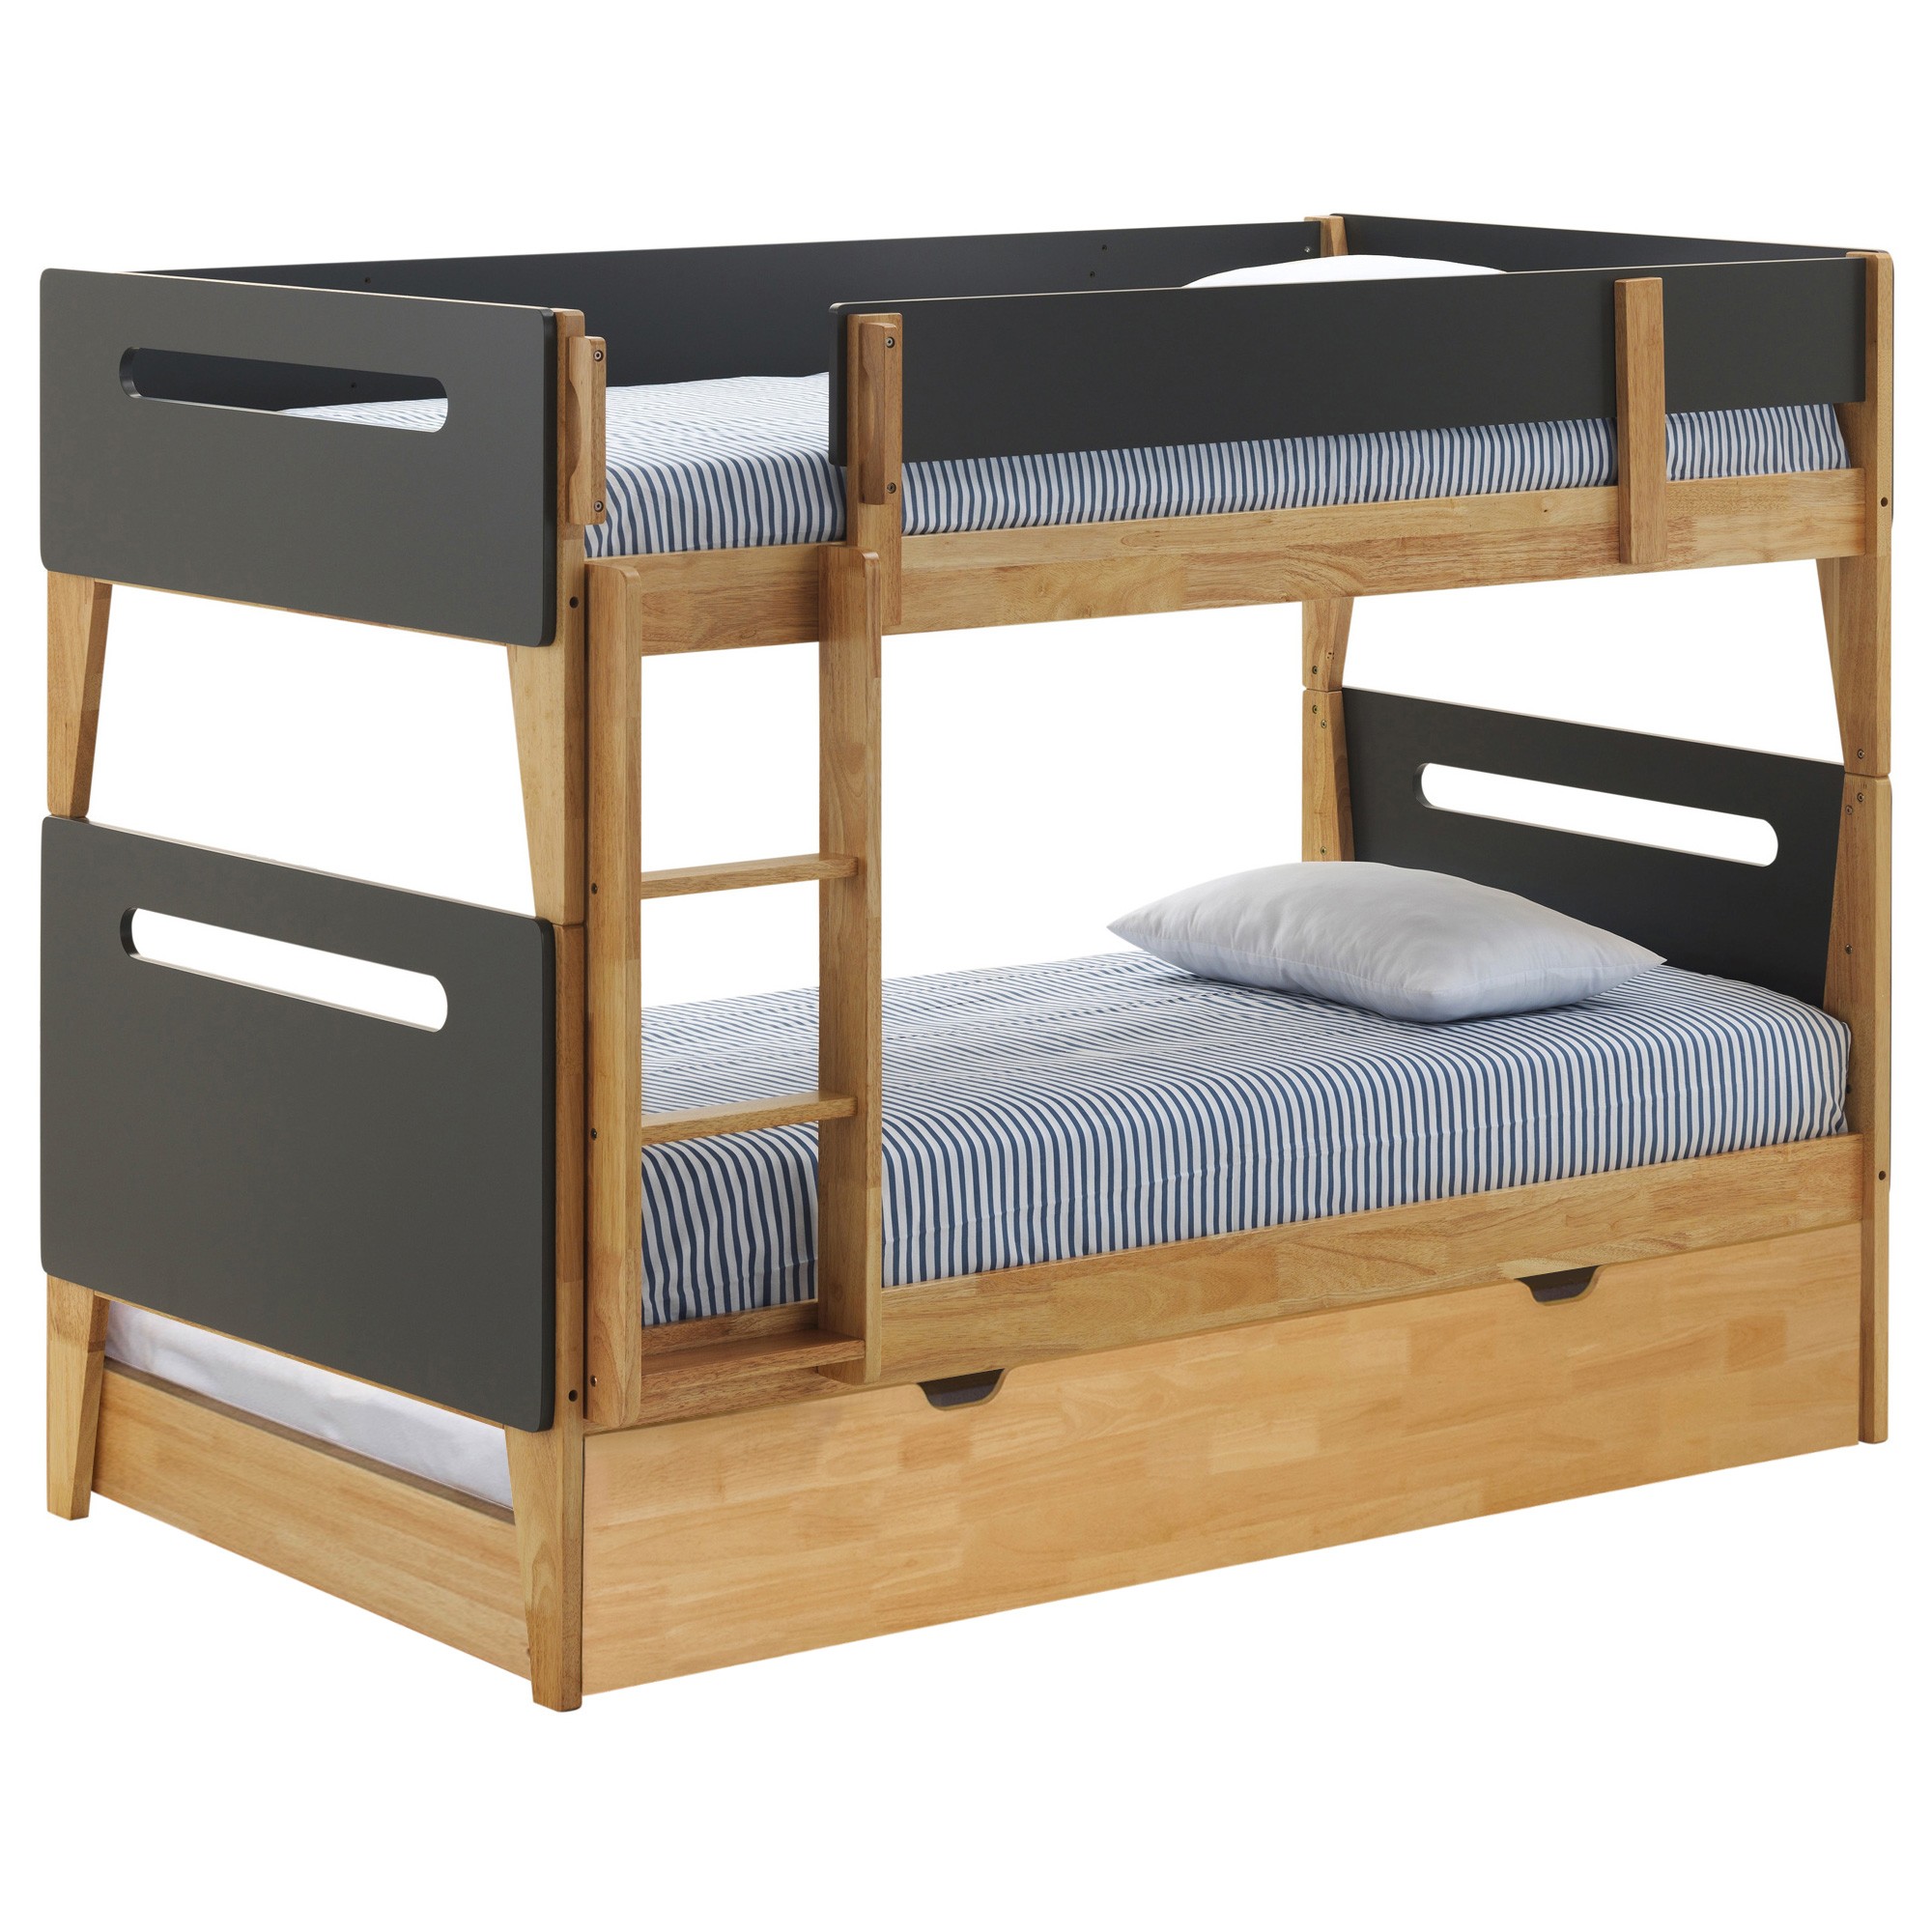 ok furniture bunk beds